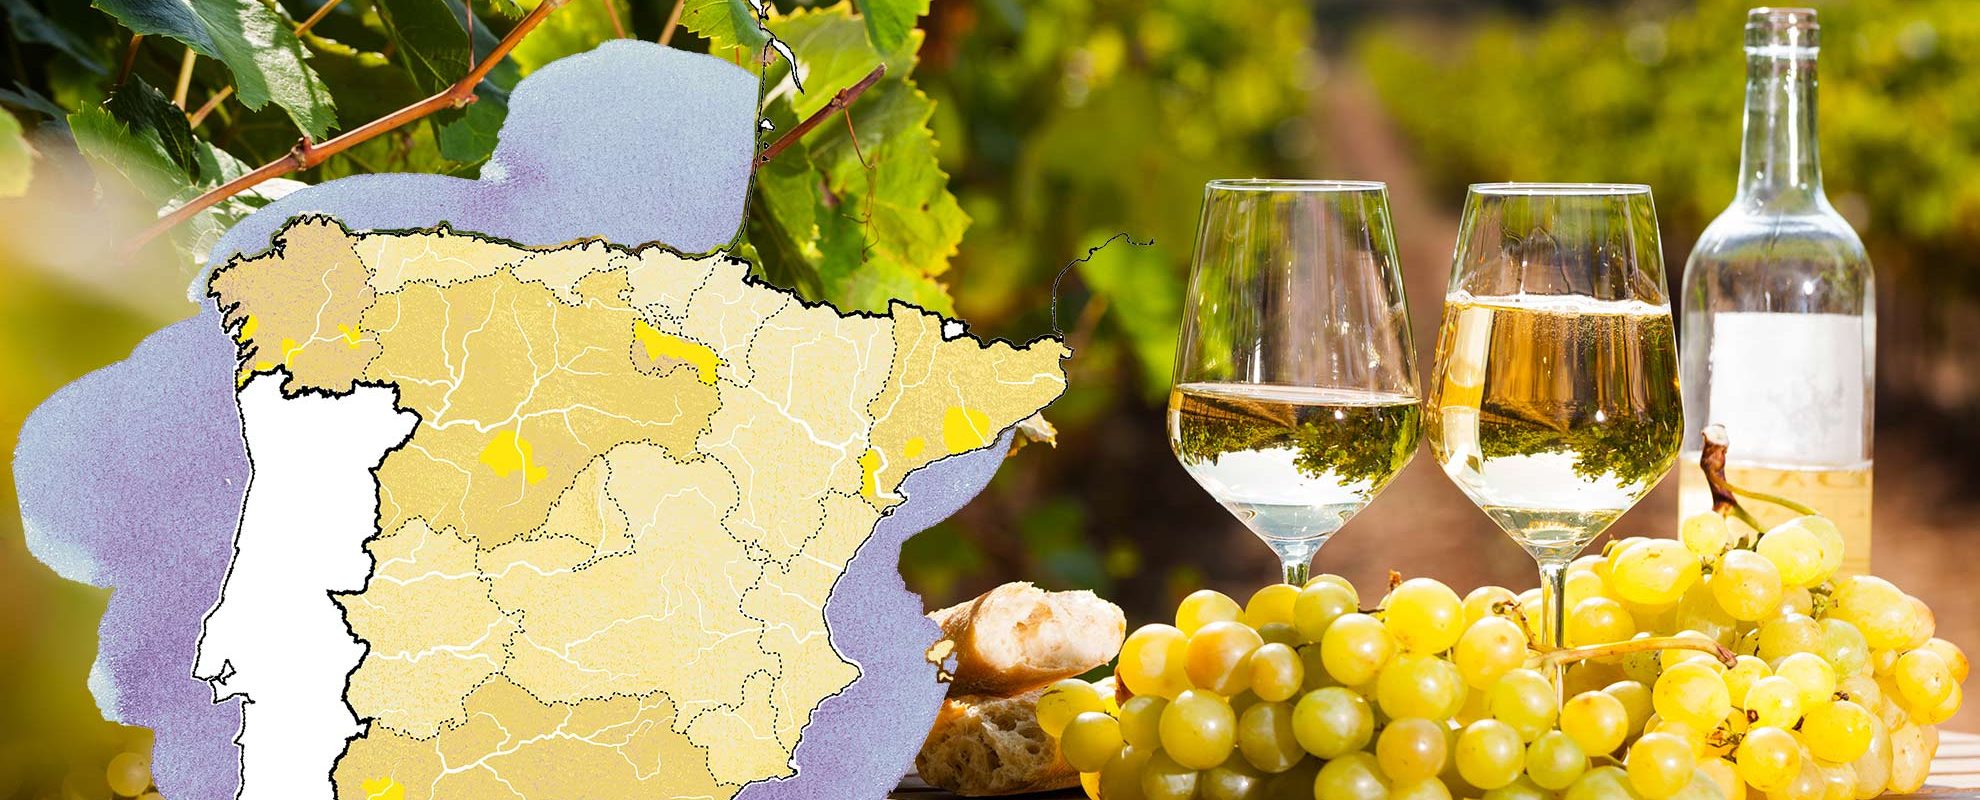 Espanjalaiset valkoviinit ja Espanjan viinialueet